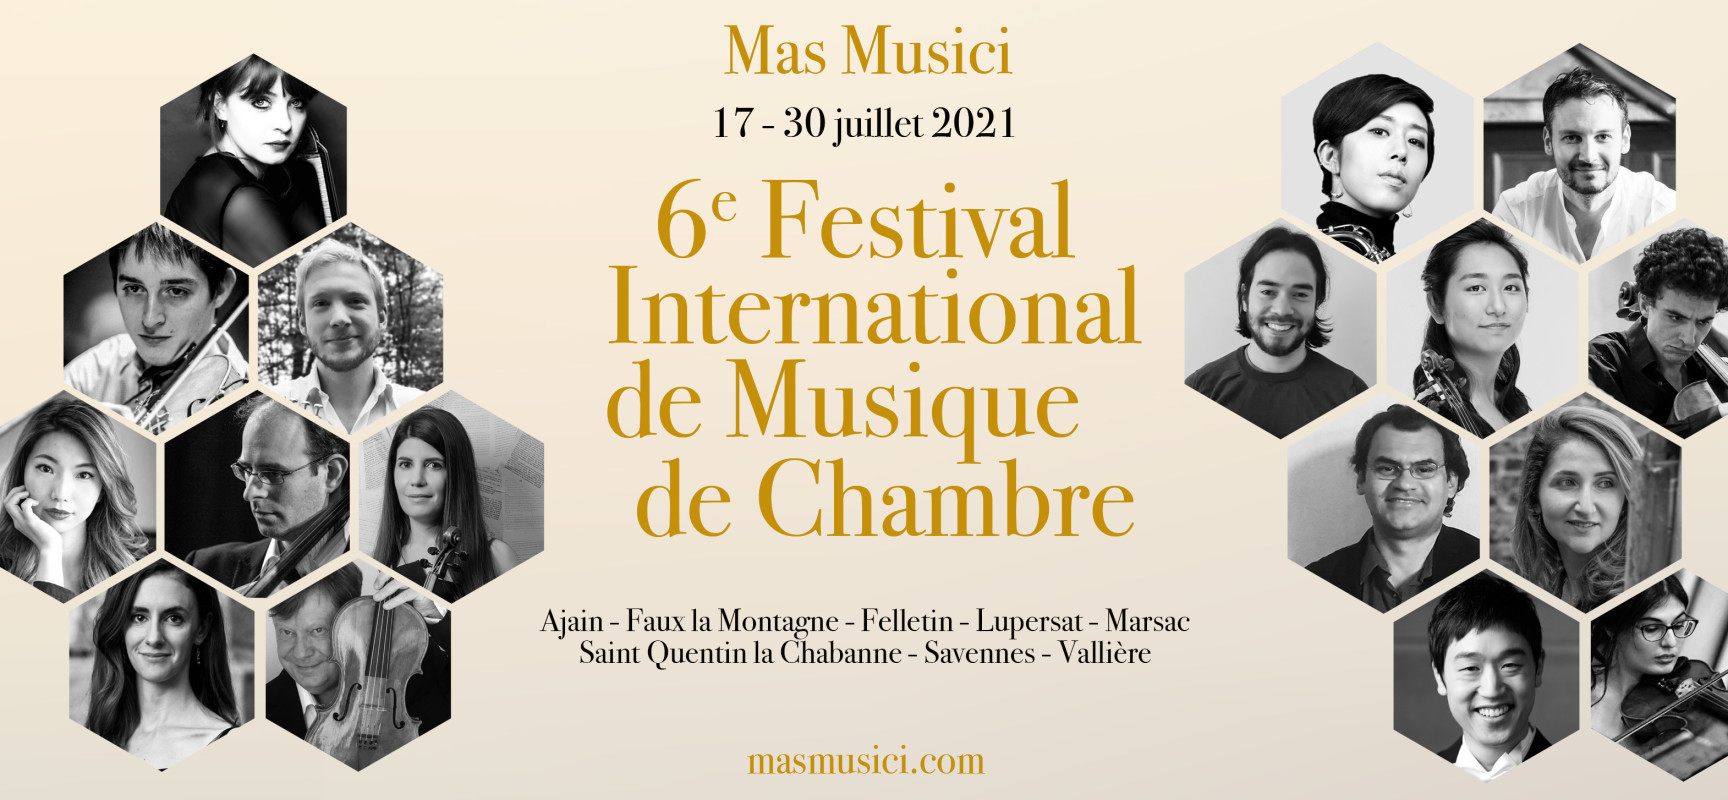 Mas Musici – 6e Festival International de Musique de Chambre – du 17 au 30 juillet 2021